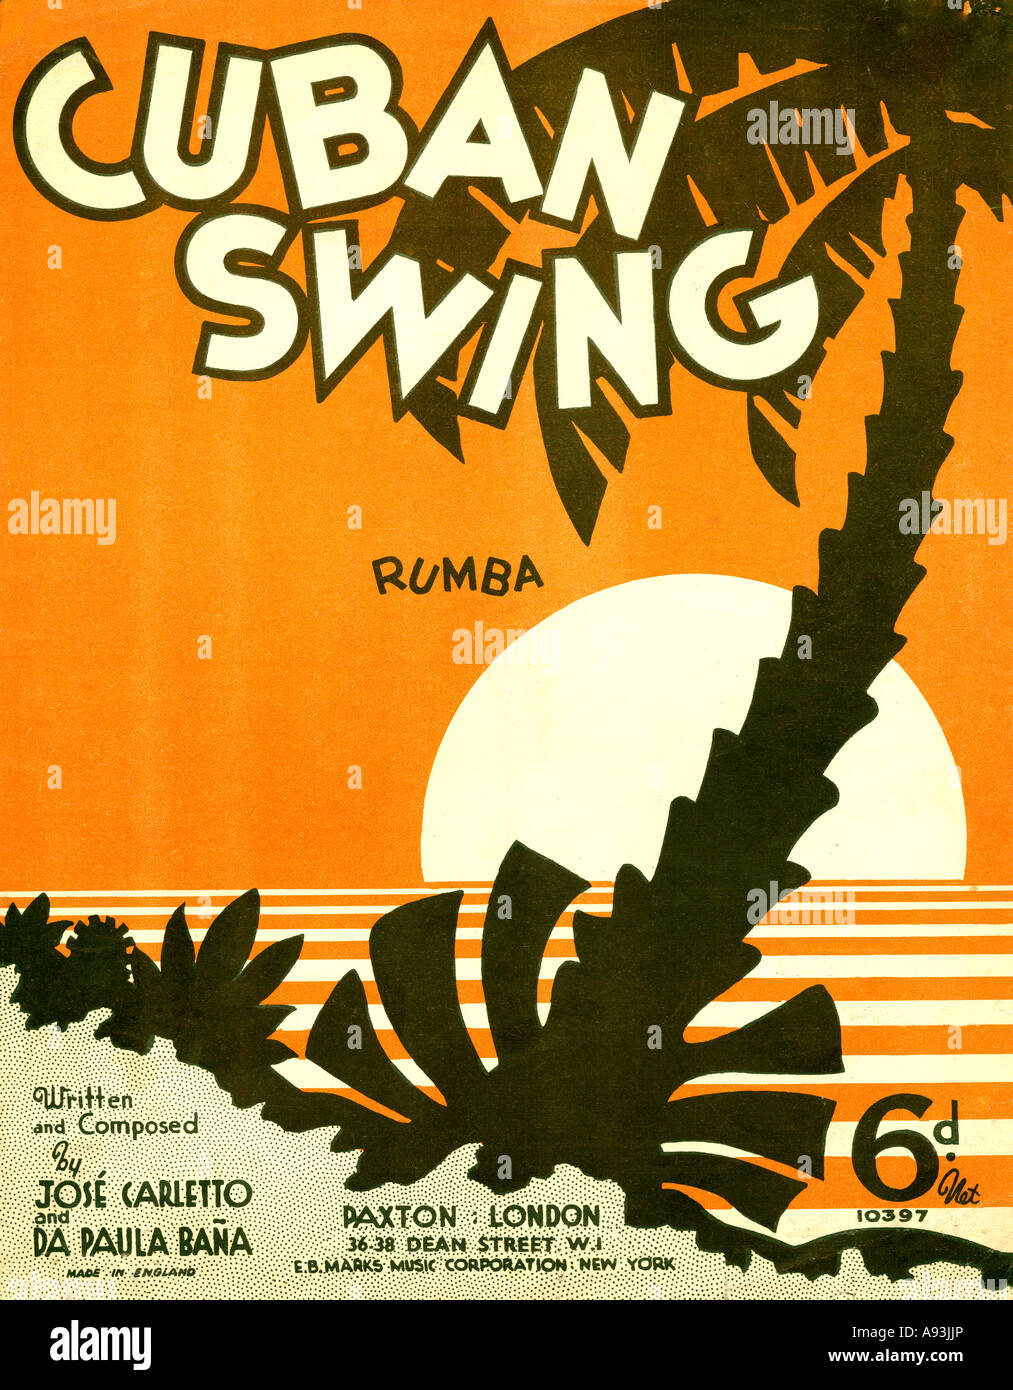 Kubanische Swing-Musik Blatt Abdeckung von 1937 zum Rumba tanzen tune populäres Lied geschrieben von Carletto und Bana Stockfoto